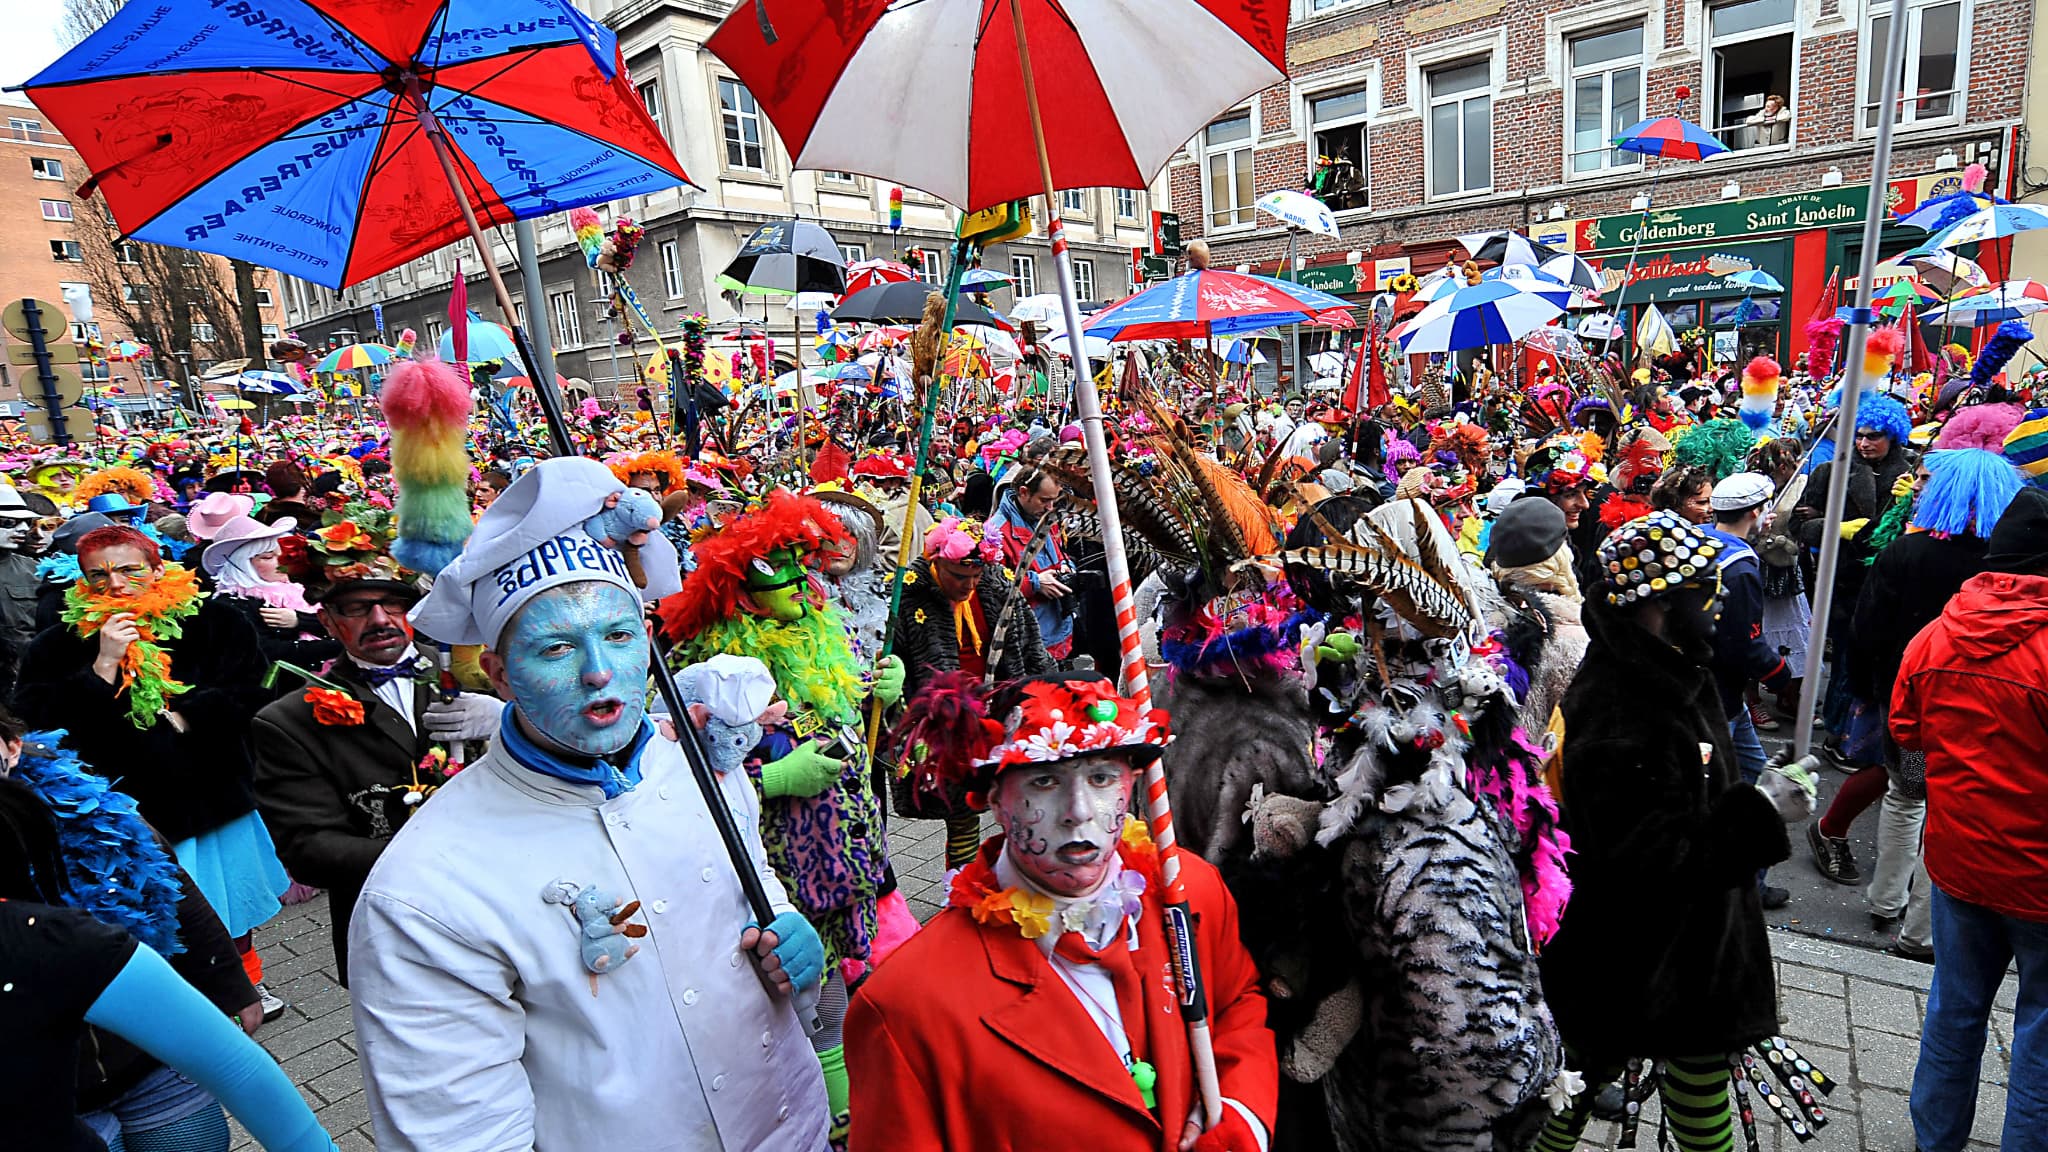 LPD] Carnaval de Dunkerque : les Trois Joyeuses à tout prix